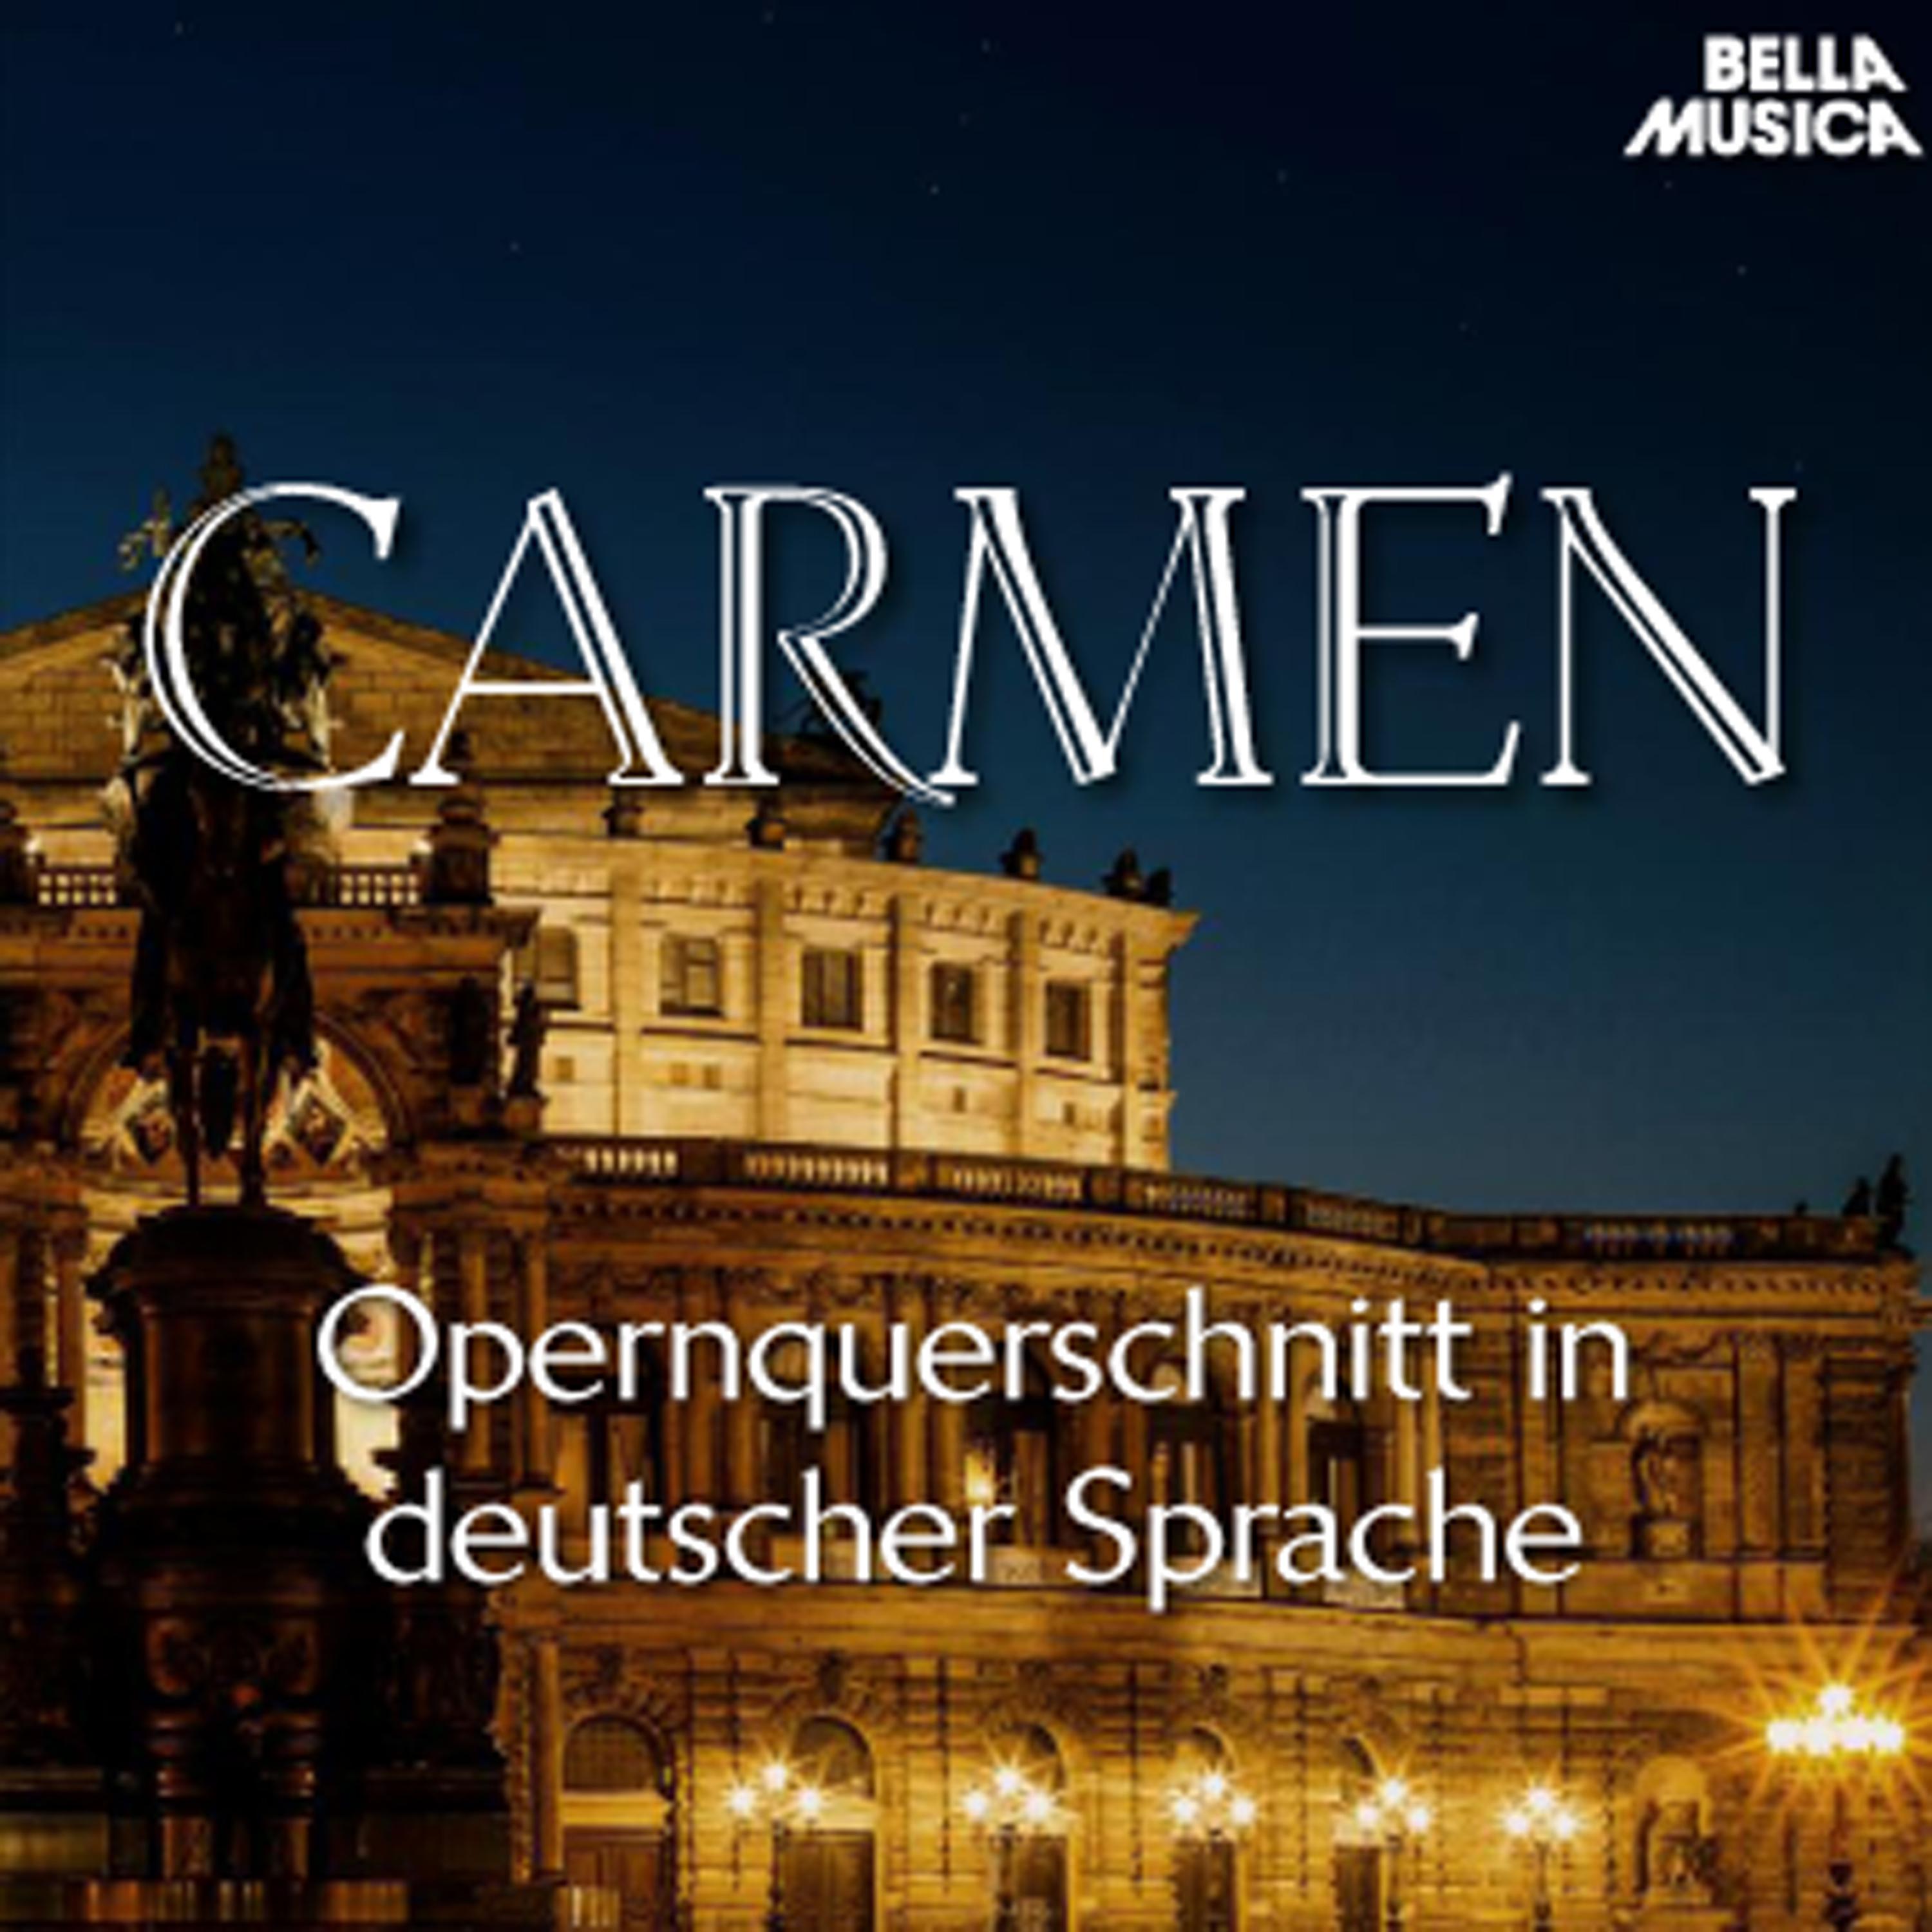 Bizet: Carmen - Opernquerschnitt in deutscher Sprache